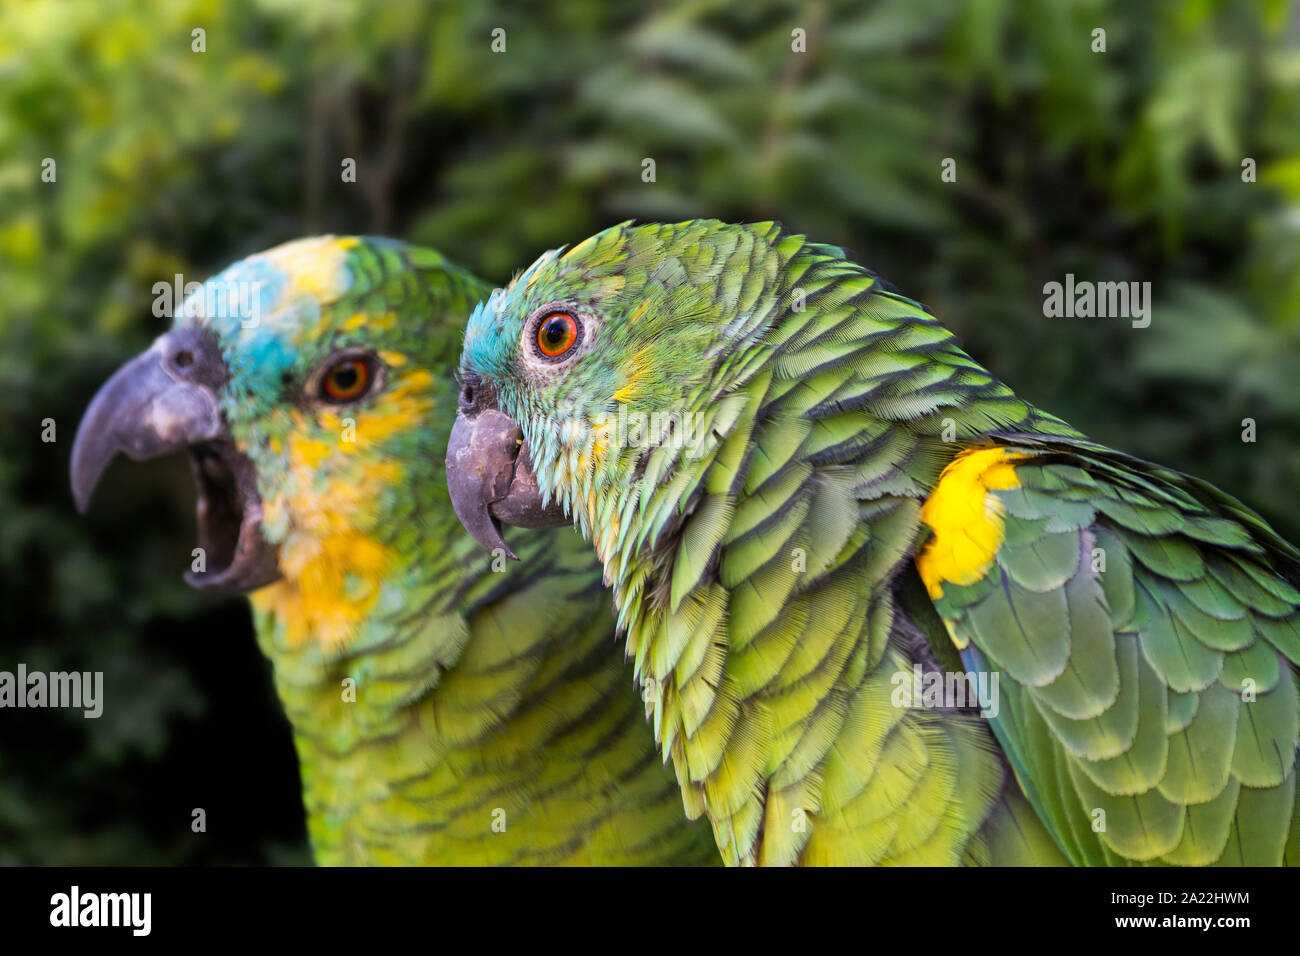 Turchese-fronteggiata amazon / turchese-fronteggiata parrot / Blu-fronteggiata amazon / Blu-fronteggiata parrot (Amazon aestiva xanthopteryx) originario del Sud America Foto Stock